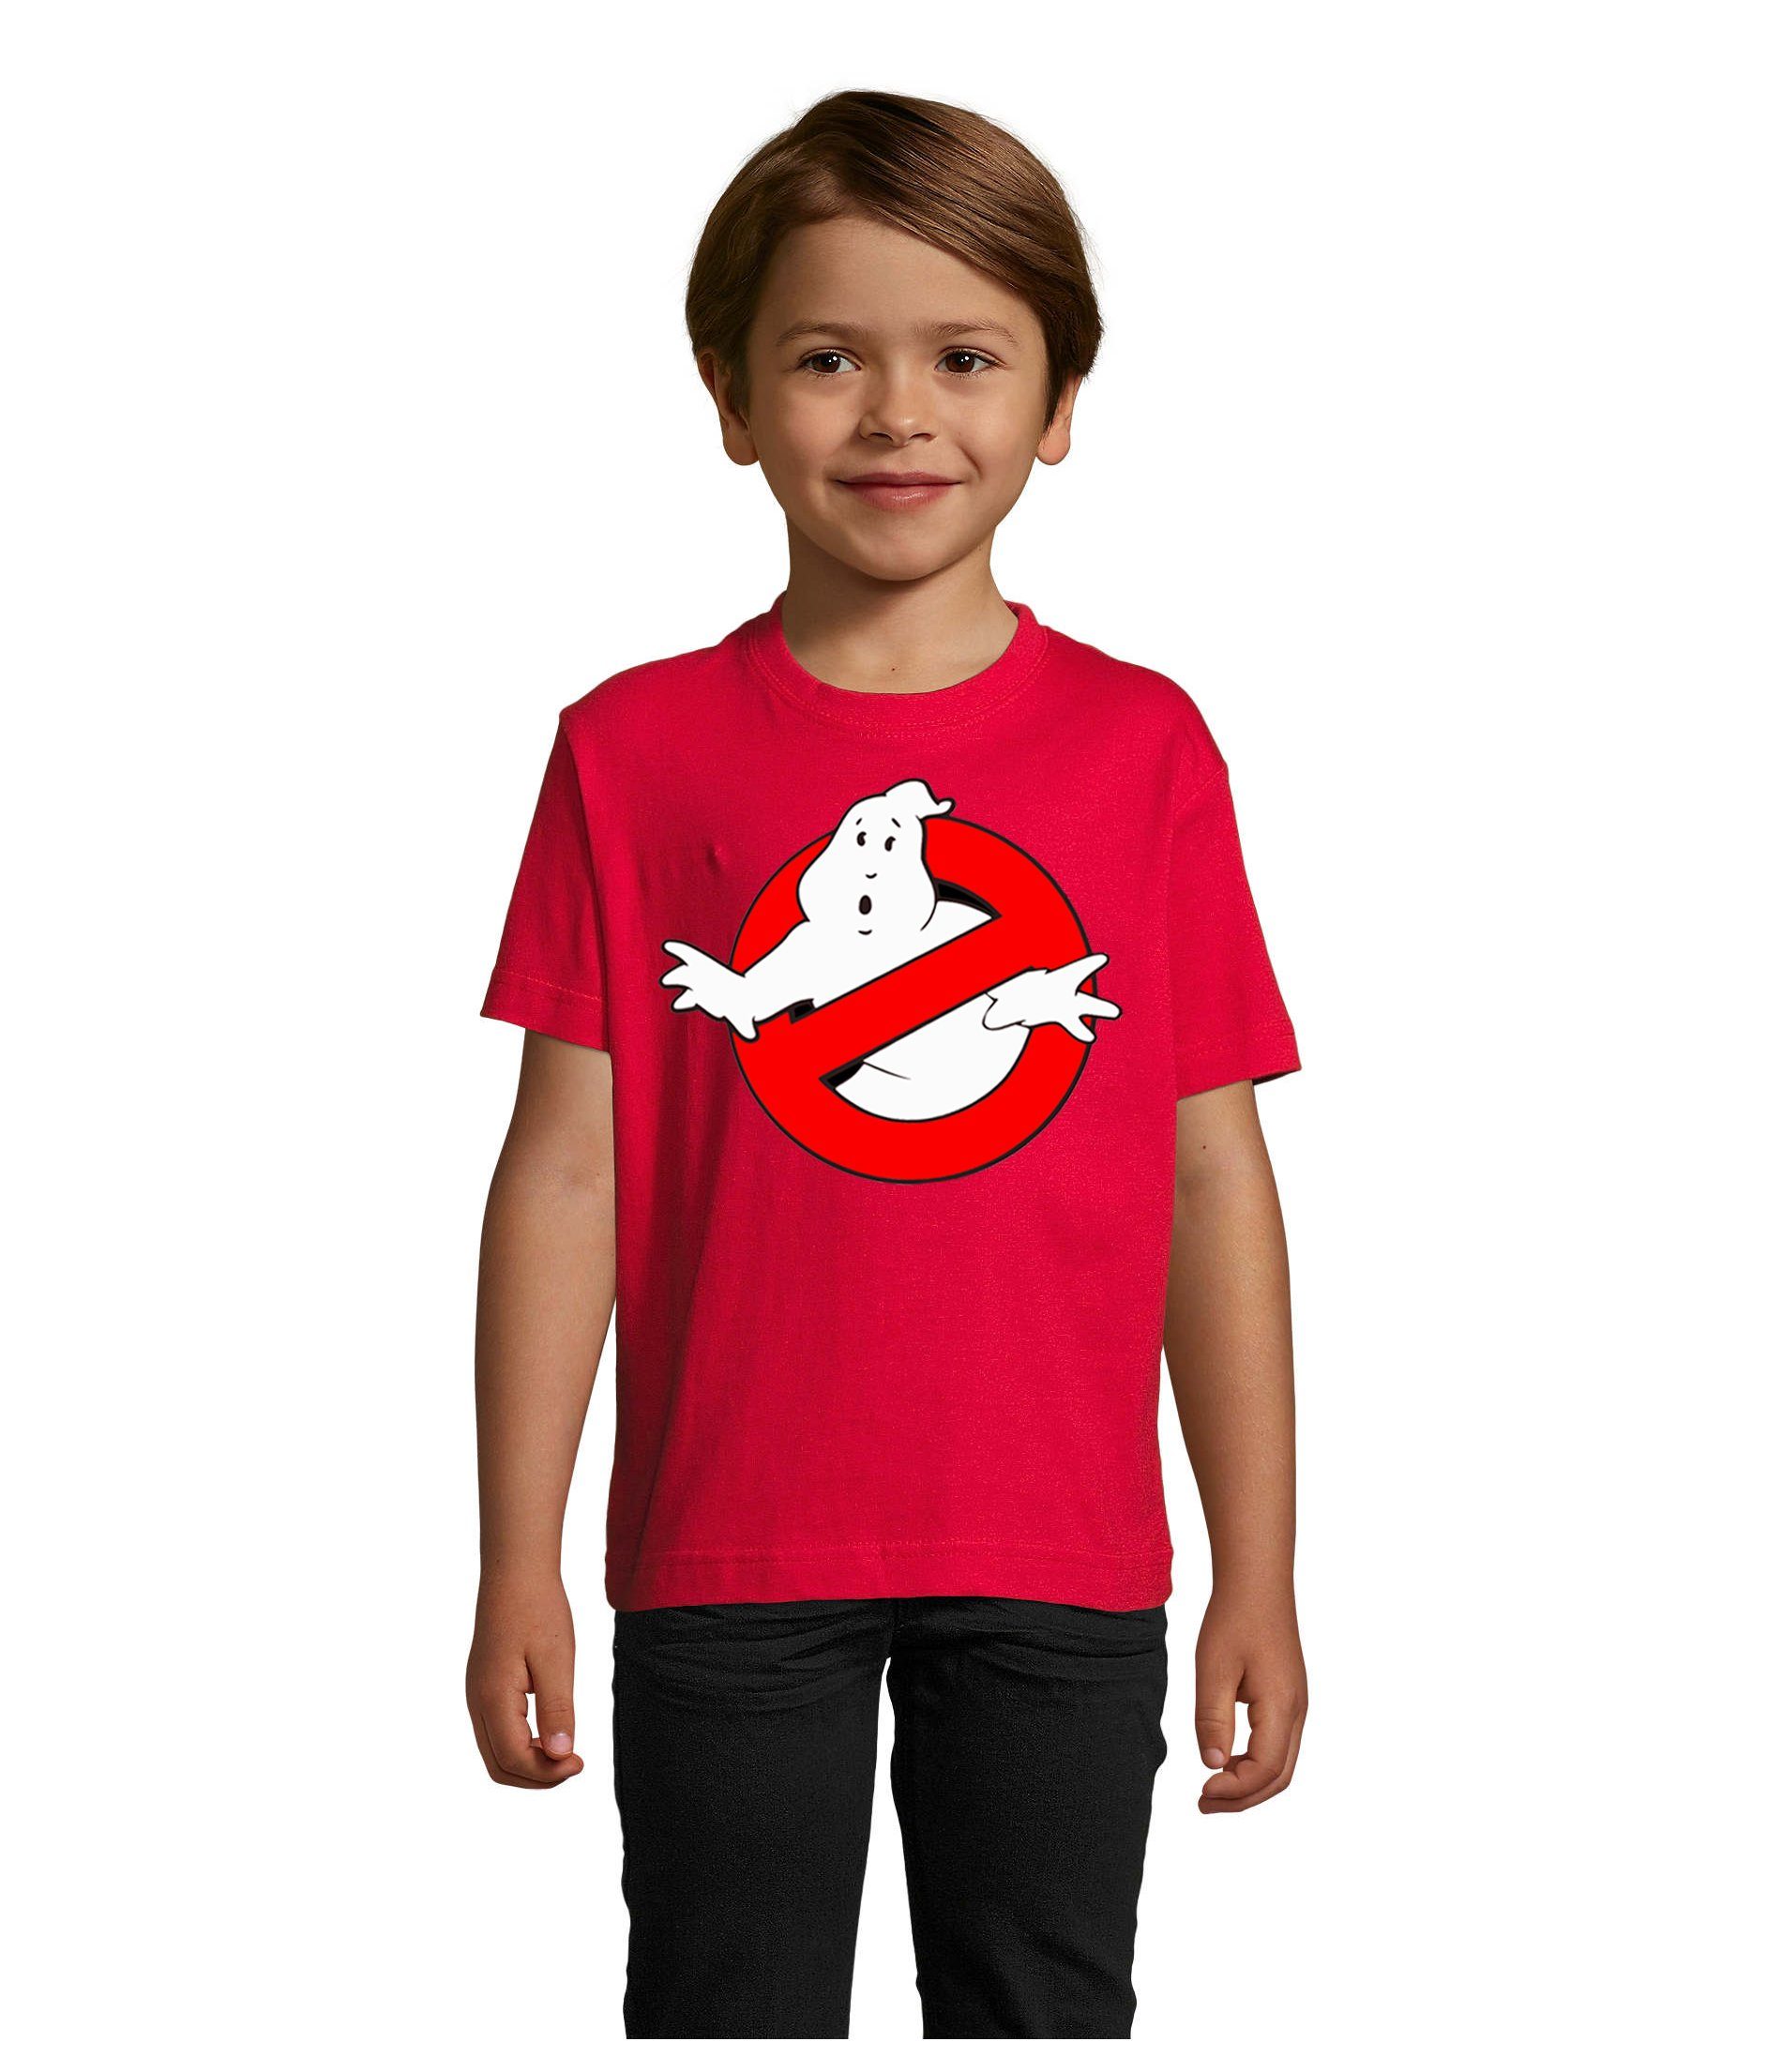 Blondie & Mädchen Jungen Geisterjäger Ghostbusters Brownie in vielen Rot Farben T-Shirt & Kinder Geister Ghost